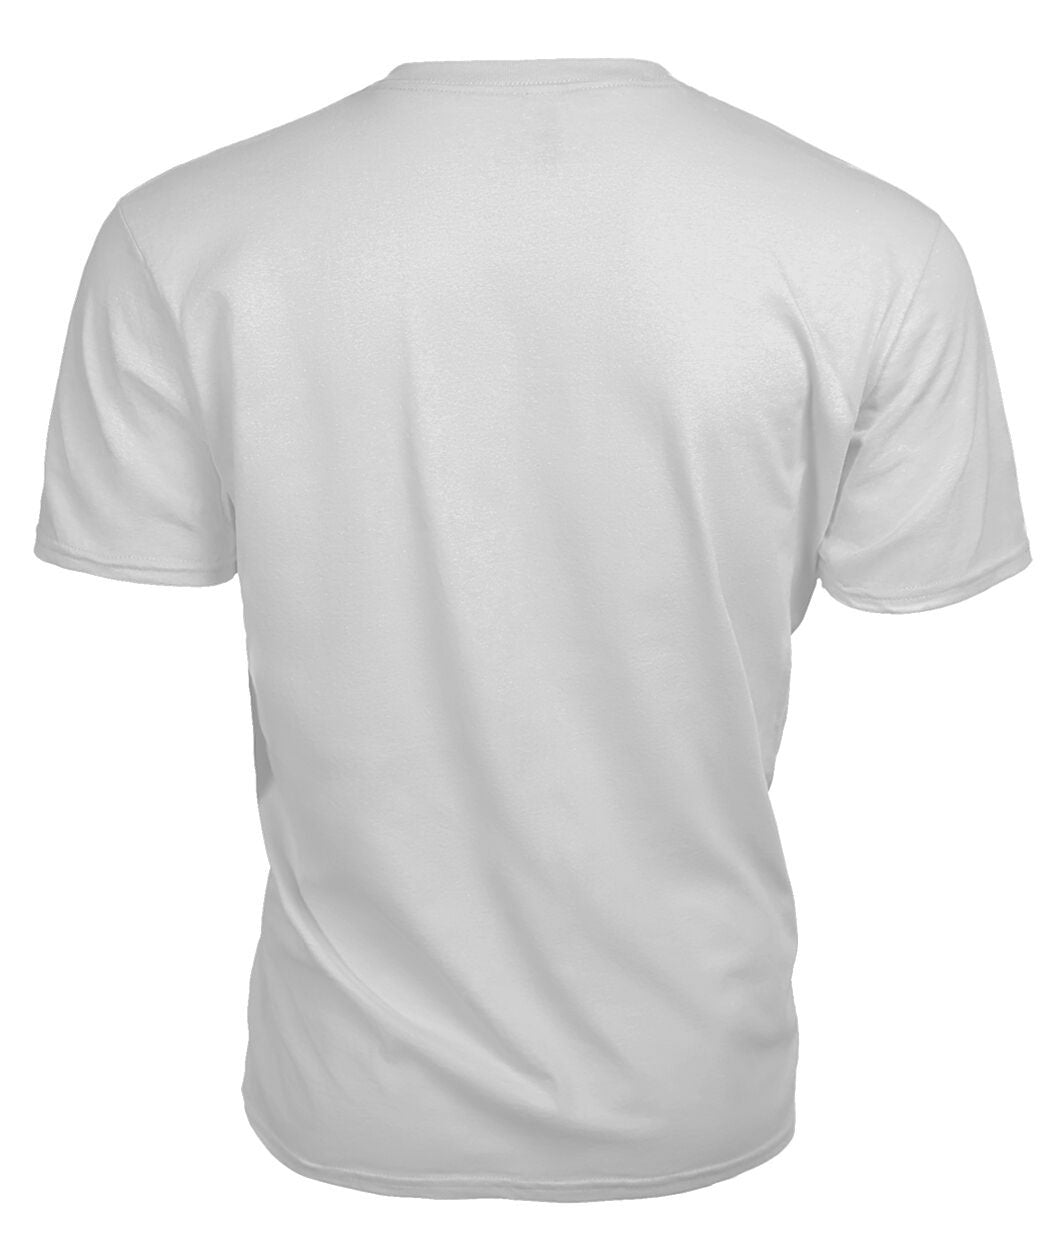 Dalziel Modern Tartan Crest 2D T-shirt - Blood Runs Through My Veins Style